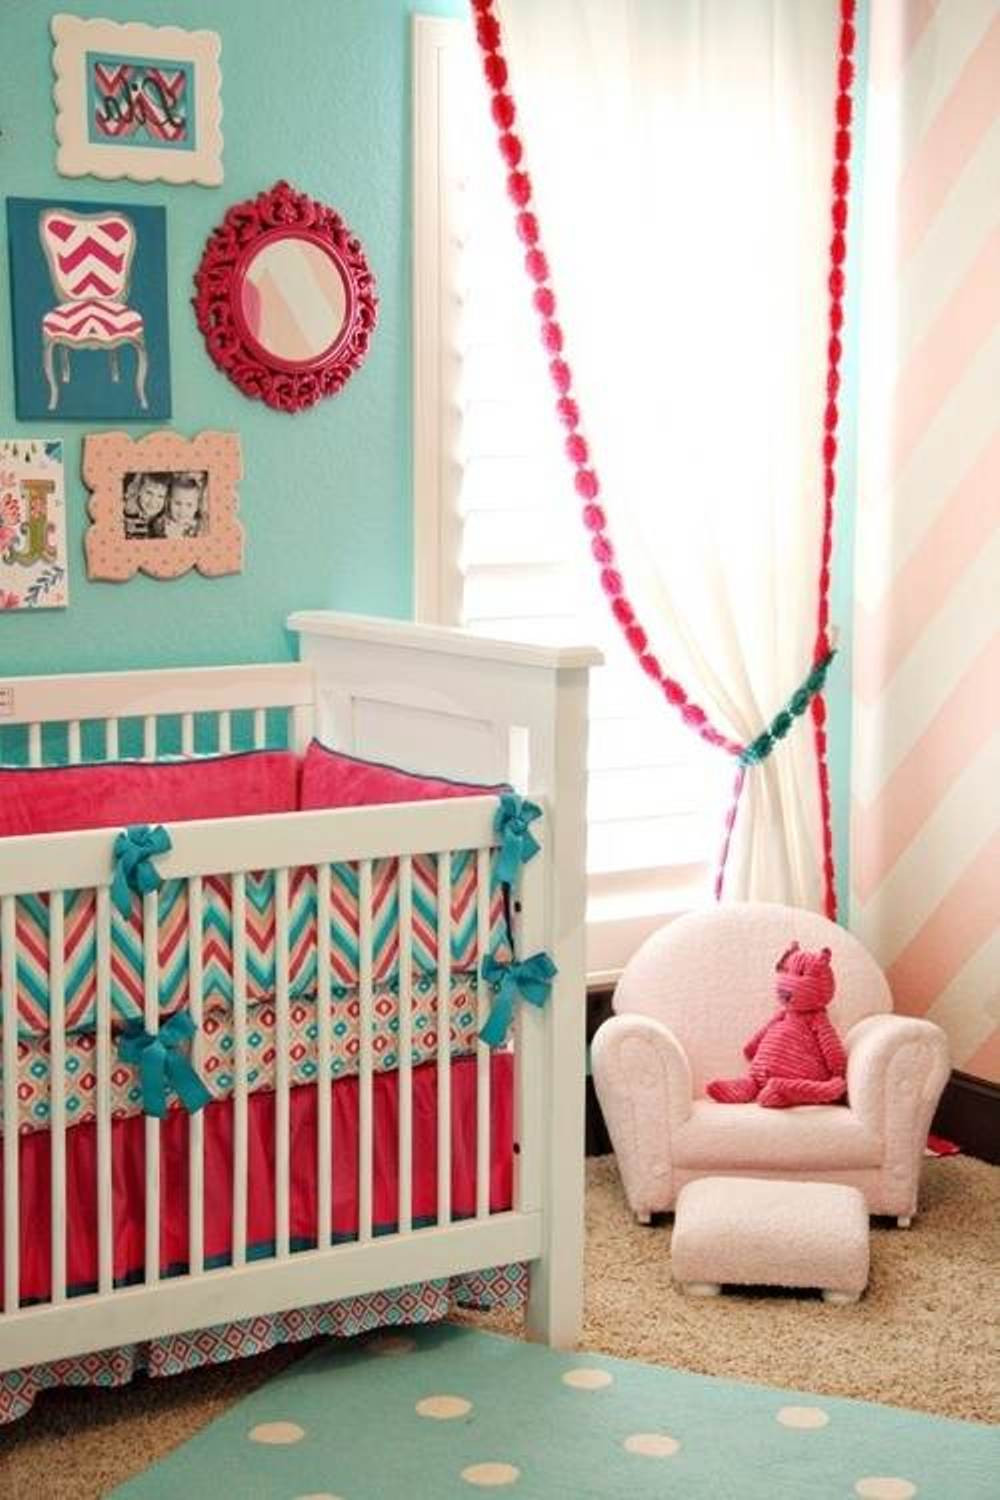 Baby Girls Bedroom Decorations
 25 Baby Bedroom Design Ideas For Your Cutie Pie